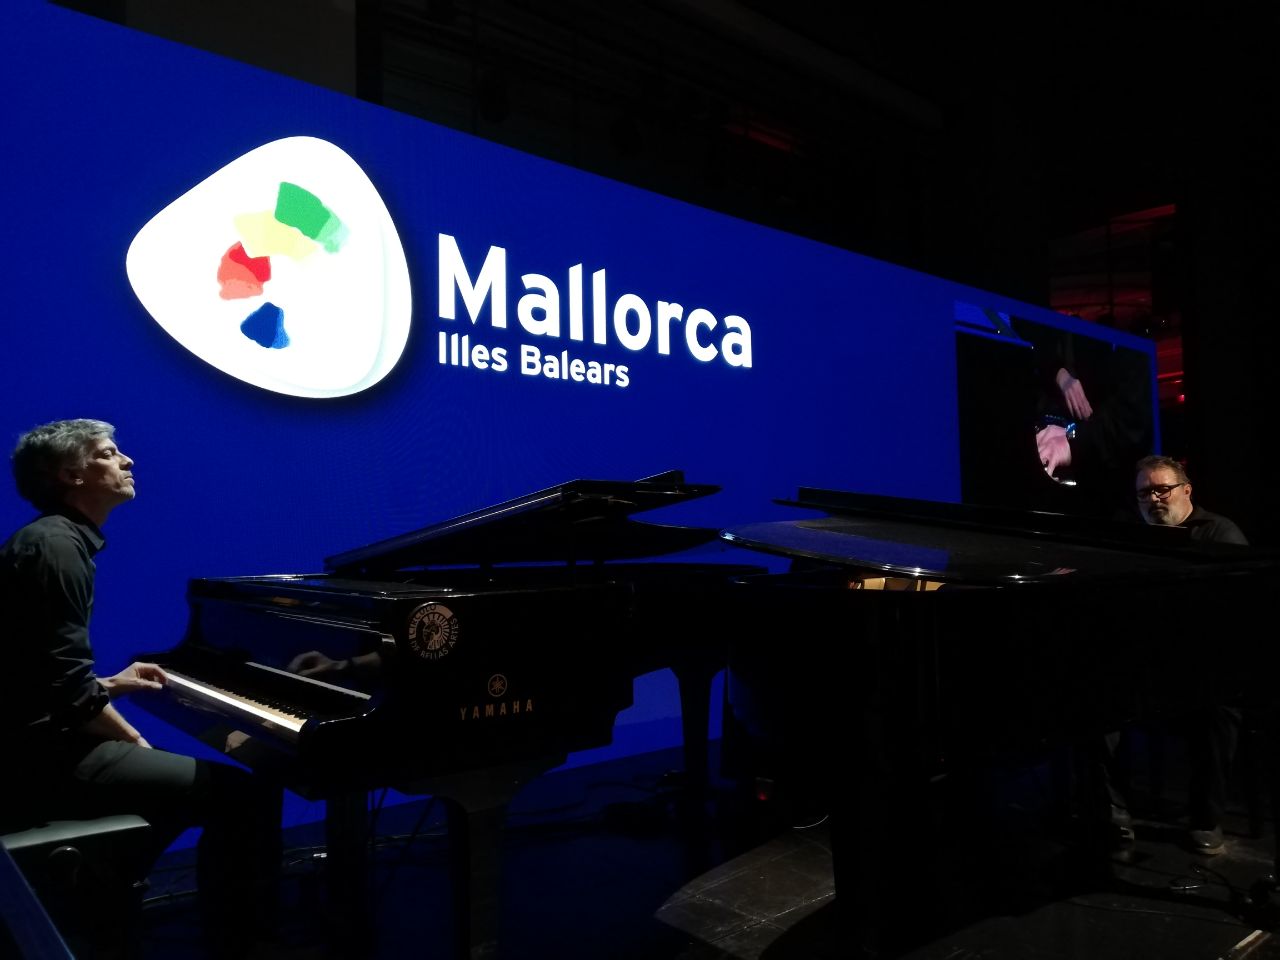 El mallorquí Joan Valent, acompanyat al piano per Joan Martorell, han interpretat també la peça composada per ells mateixos, «El Pla», mentre els assistents han pogut visionar un vídeo amb imatges d’aquesta zona de Mallorca.